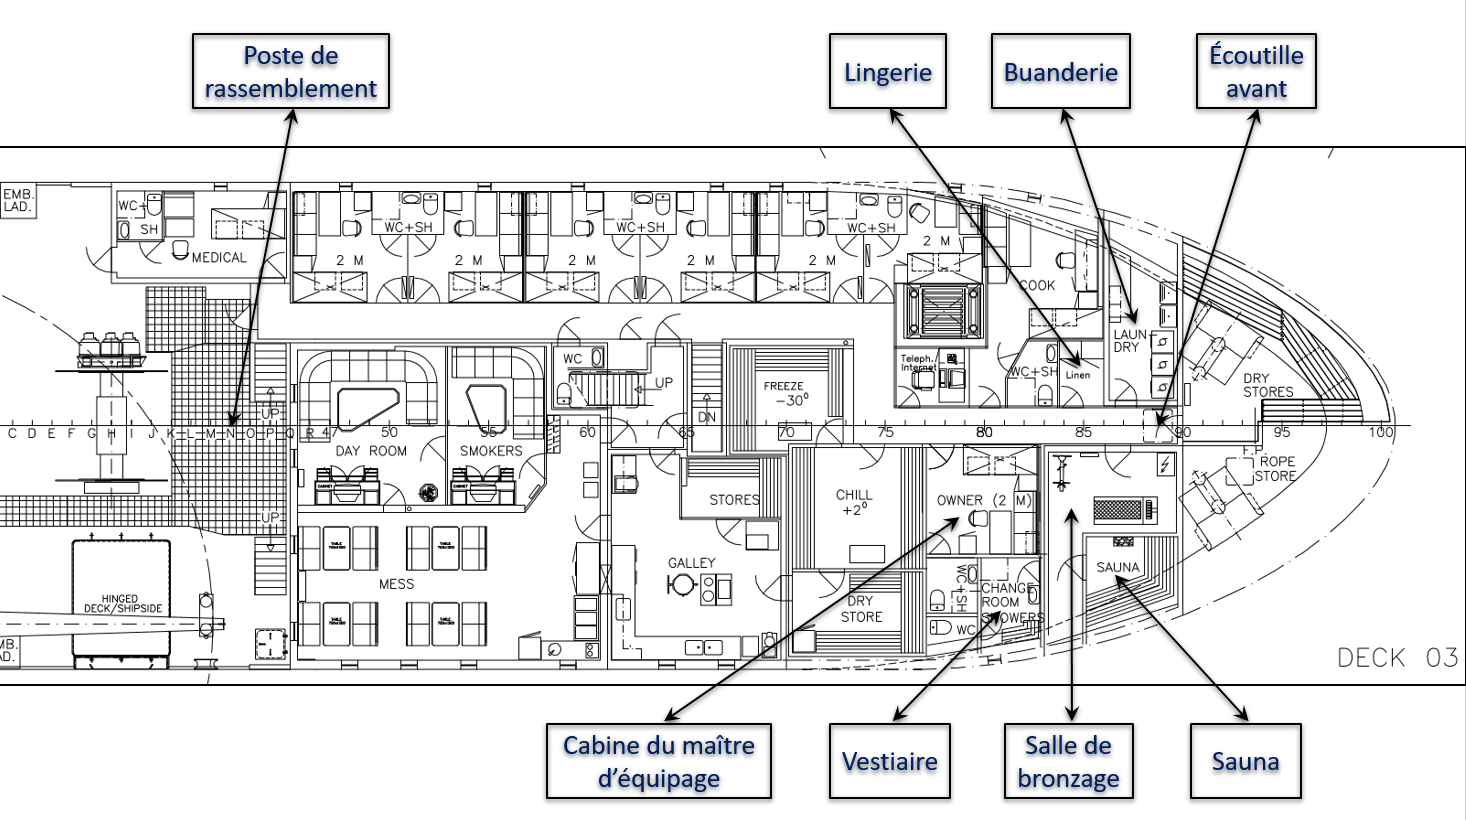 Plan d’ensemble du pont 03 du Newfoundland Lynx, indiquant l’emplacement du poste de rassemblement, de la lingerie, de la buanderie, de l’écoutille avant, de la cabine du maître d’équipage, du vestiaire, de la salle de bronzage et du sauna (Source : ShipCon ApS, avec annotations du BST)